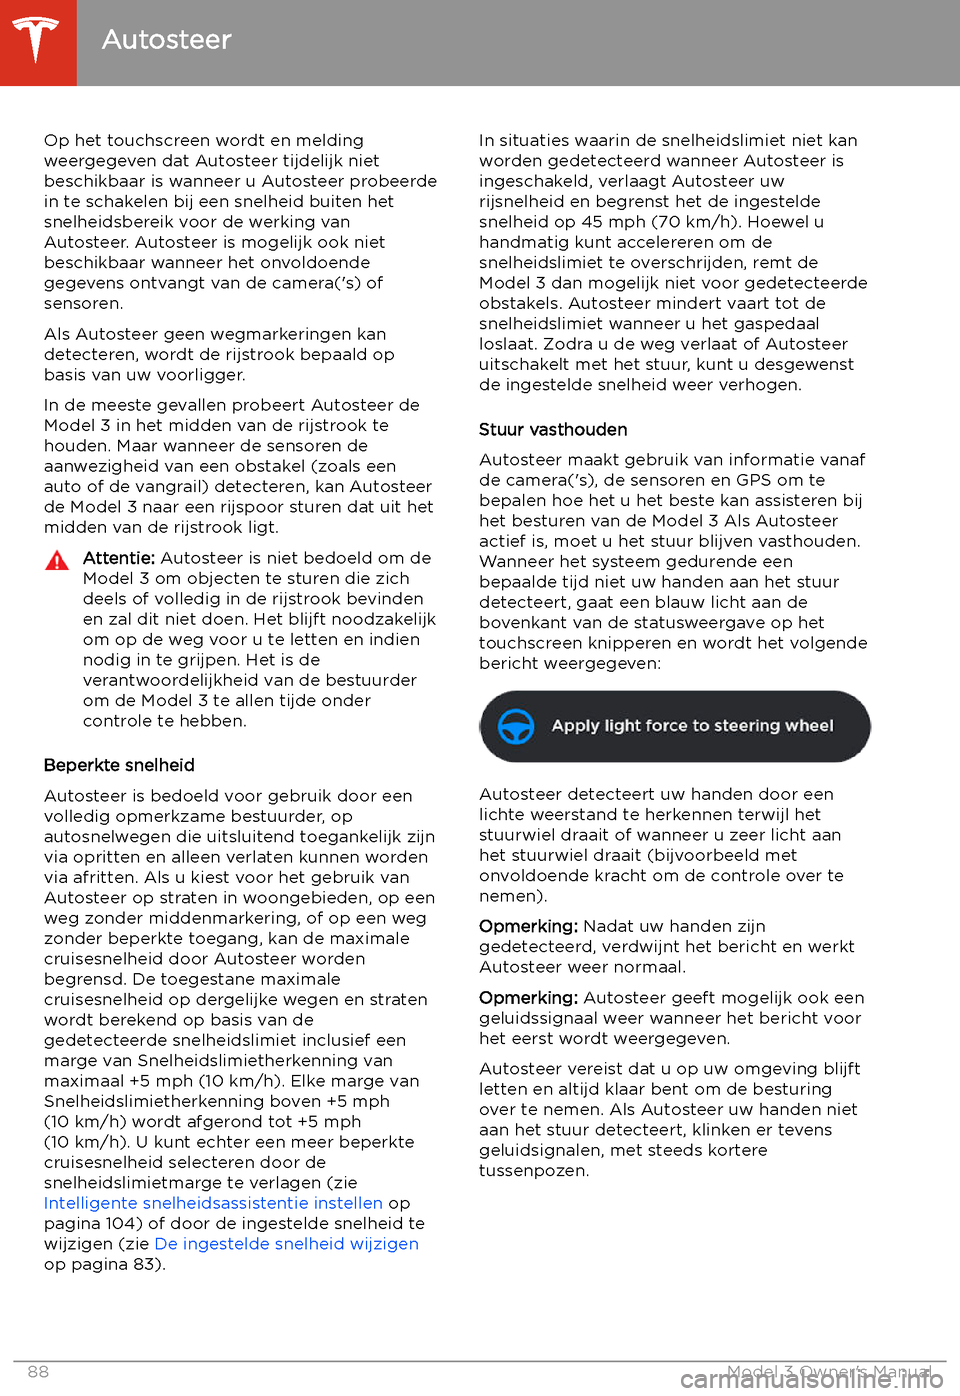 TESLA MODEL 3 2019  Handleiding (in Dutch) Op het touchscreen wordt en melding
weergegeven dat Autosteer tijdelijk niet beschikbaar is wanneer u Autosteer probeerde
in te schakelen bij een snelheid buiten het
snelheidsbereik voor de werking va